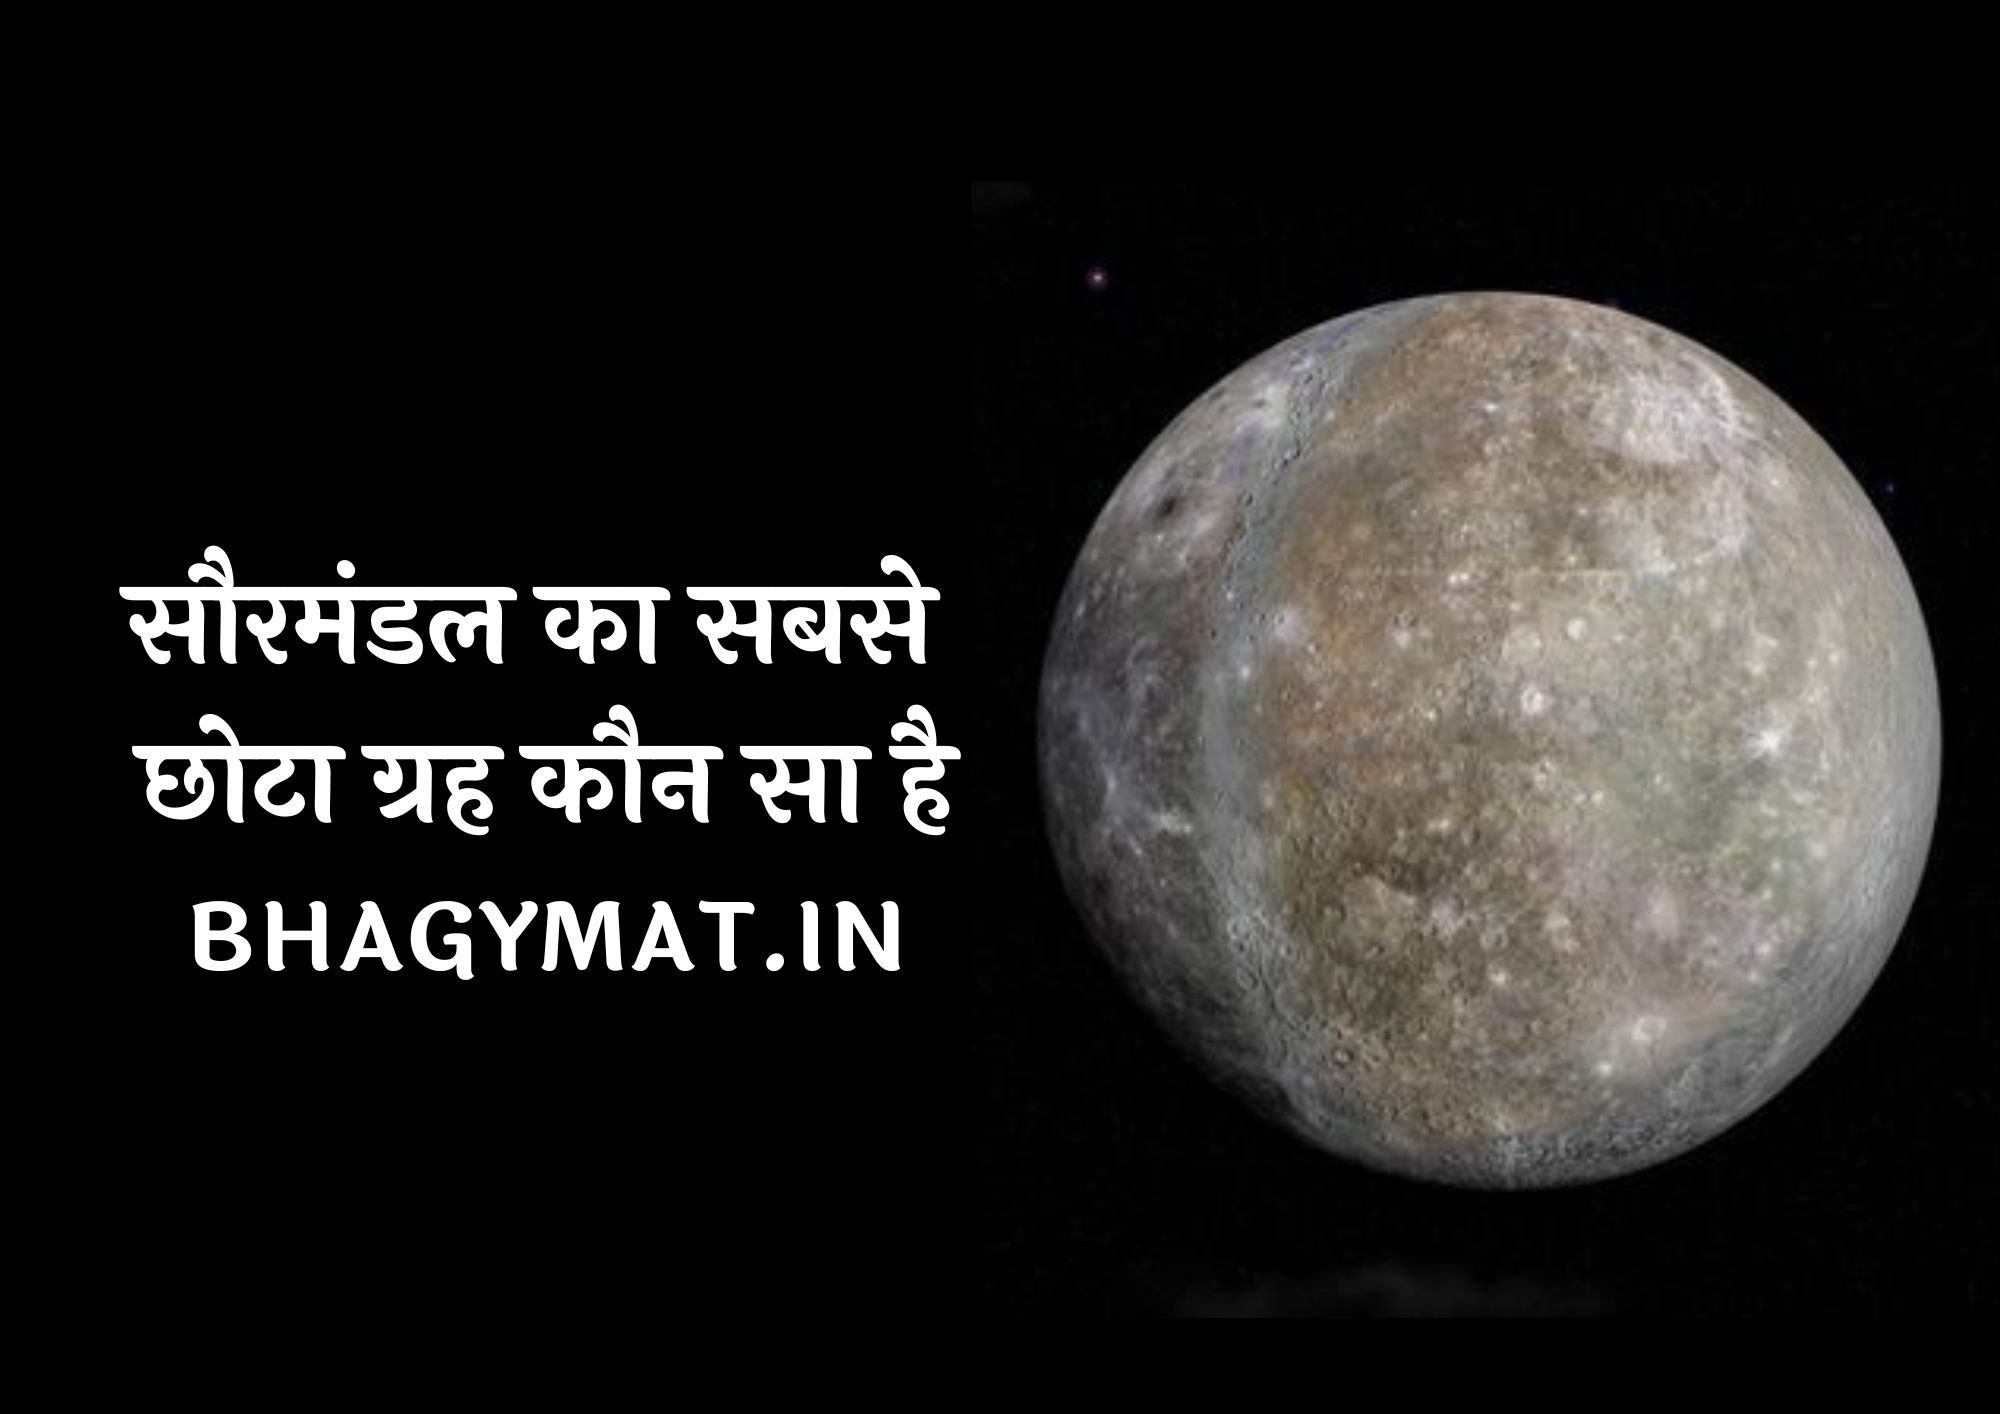 सौरमंडल का सबसे छोटा ग्रह कौन सा है, सौरमंडल में सबसे छोटा ग्रह कौन सा है - Saurmandal Ka Sabse Chhota Grah Kaun Sa Hai